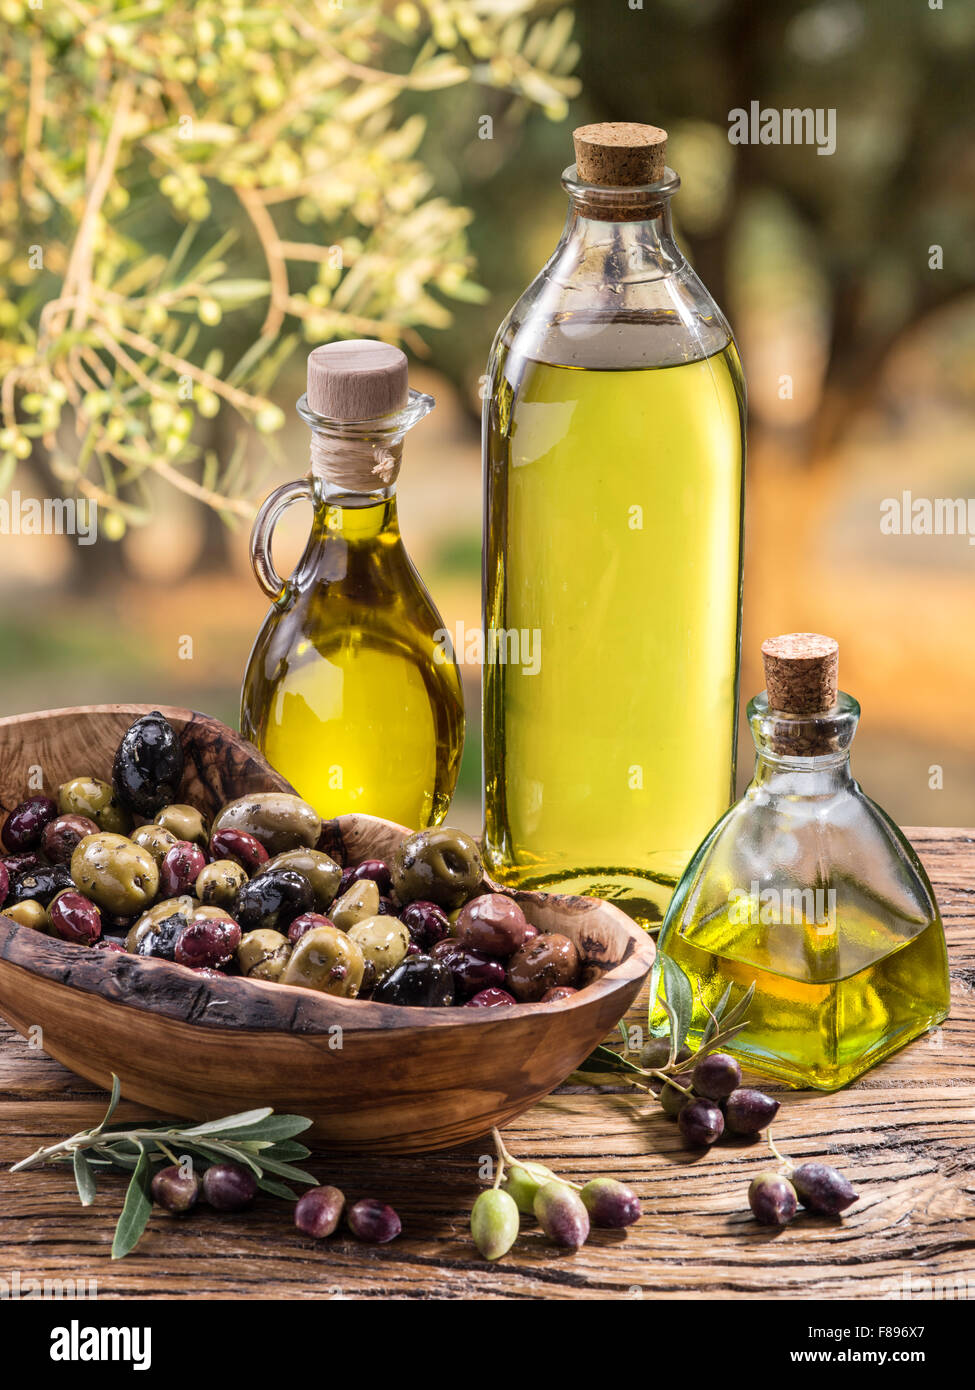 Olivenöl und Beeren sind auf dem Holztisch unter dem Olivenbaum. Stockfoto